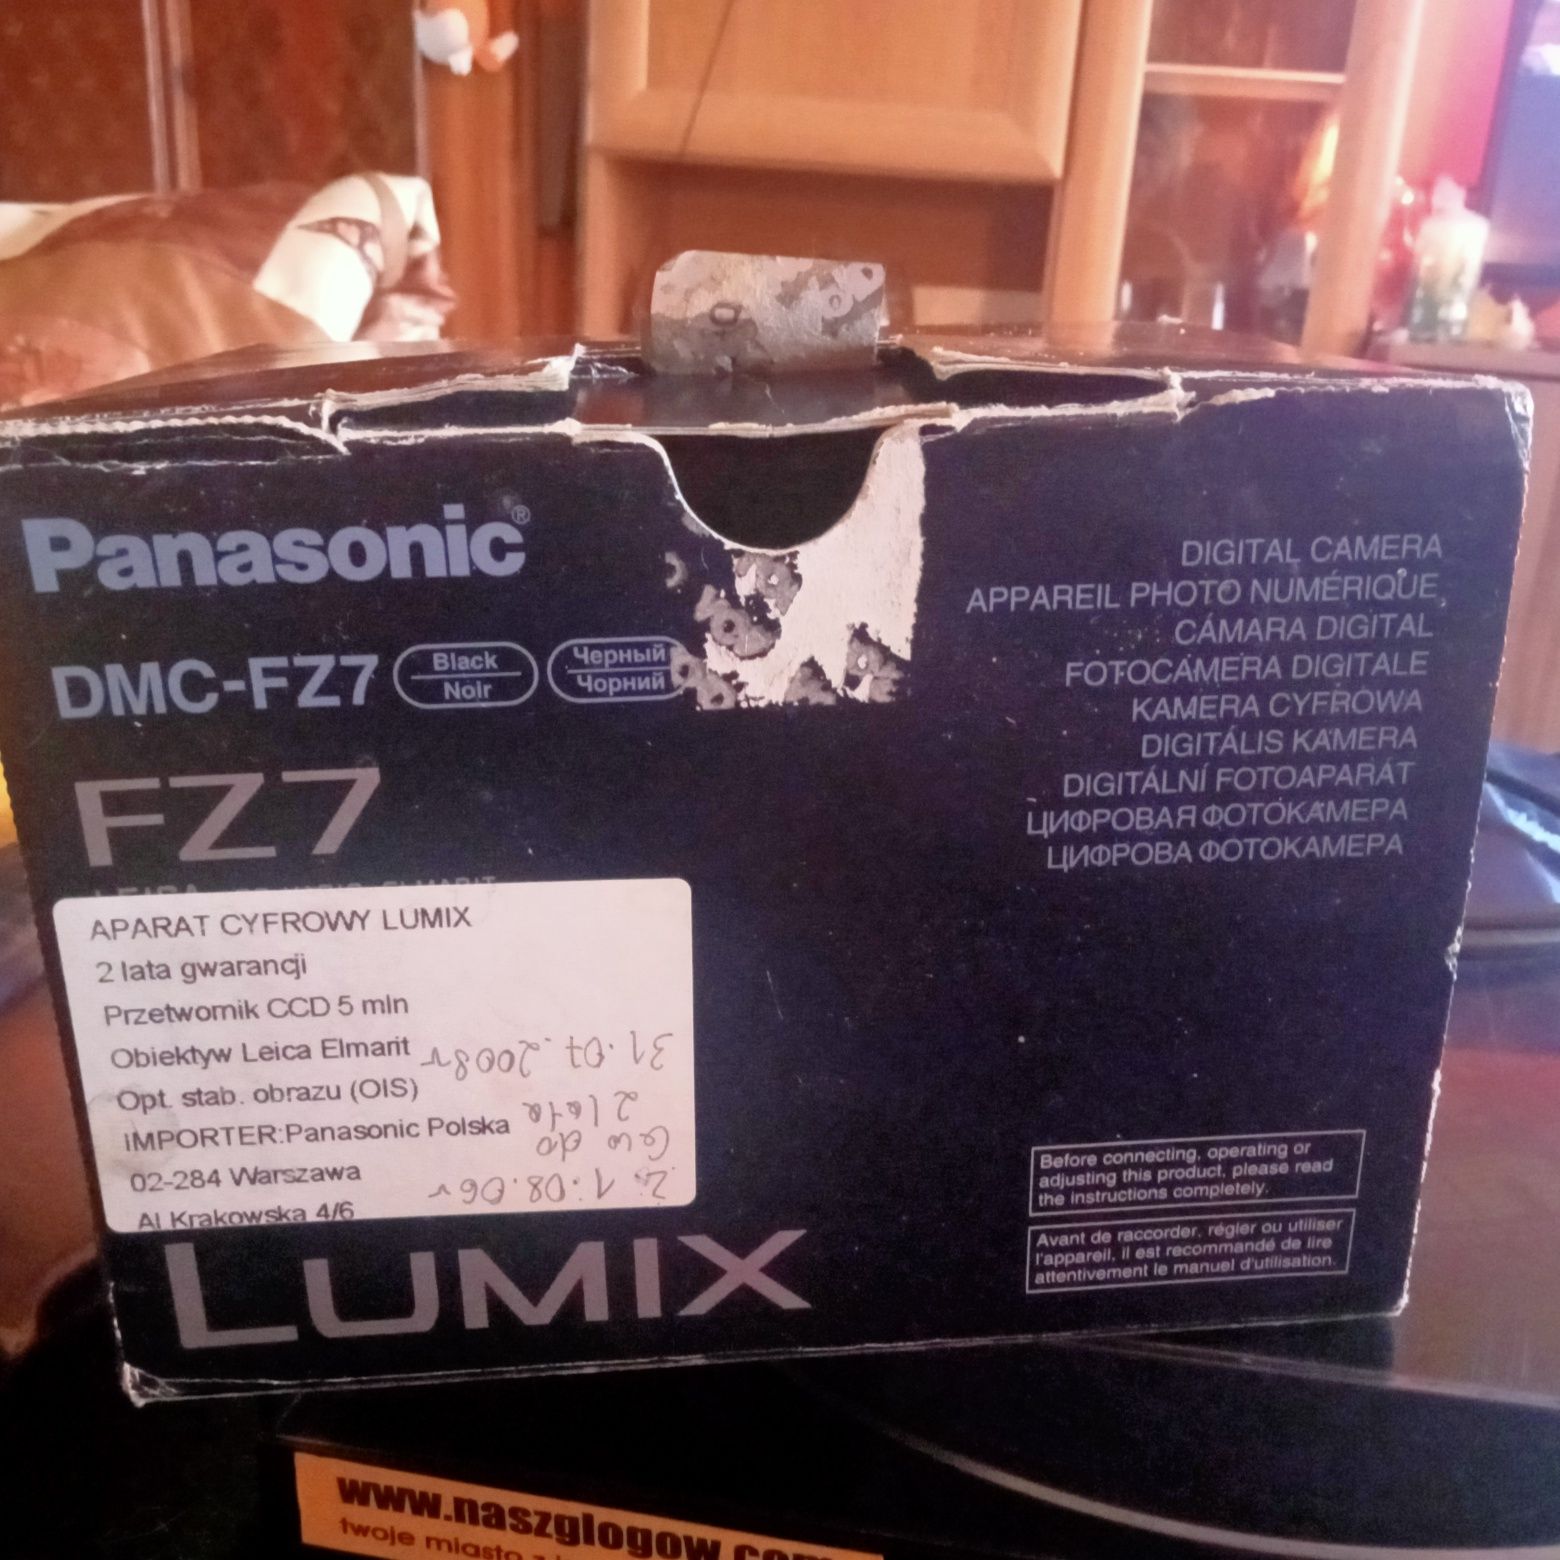 Aparat fotograficzny Panasonic Lumix DMC- FZ7 sprzedam